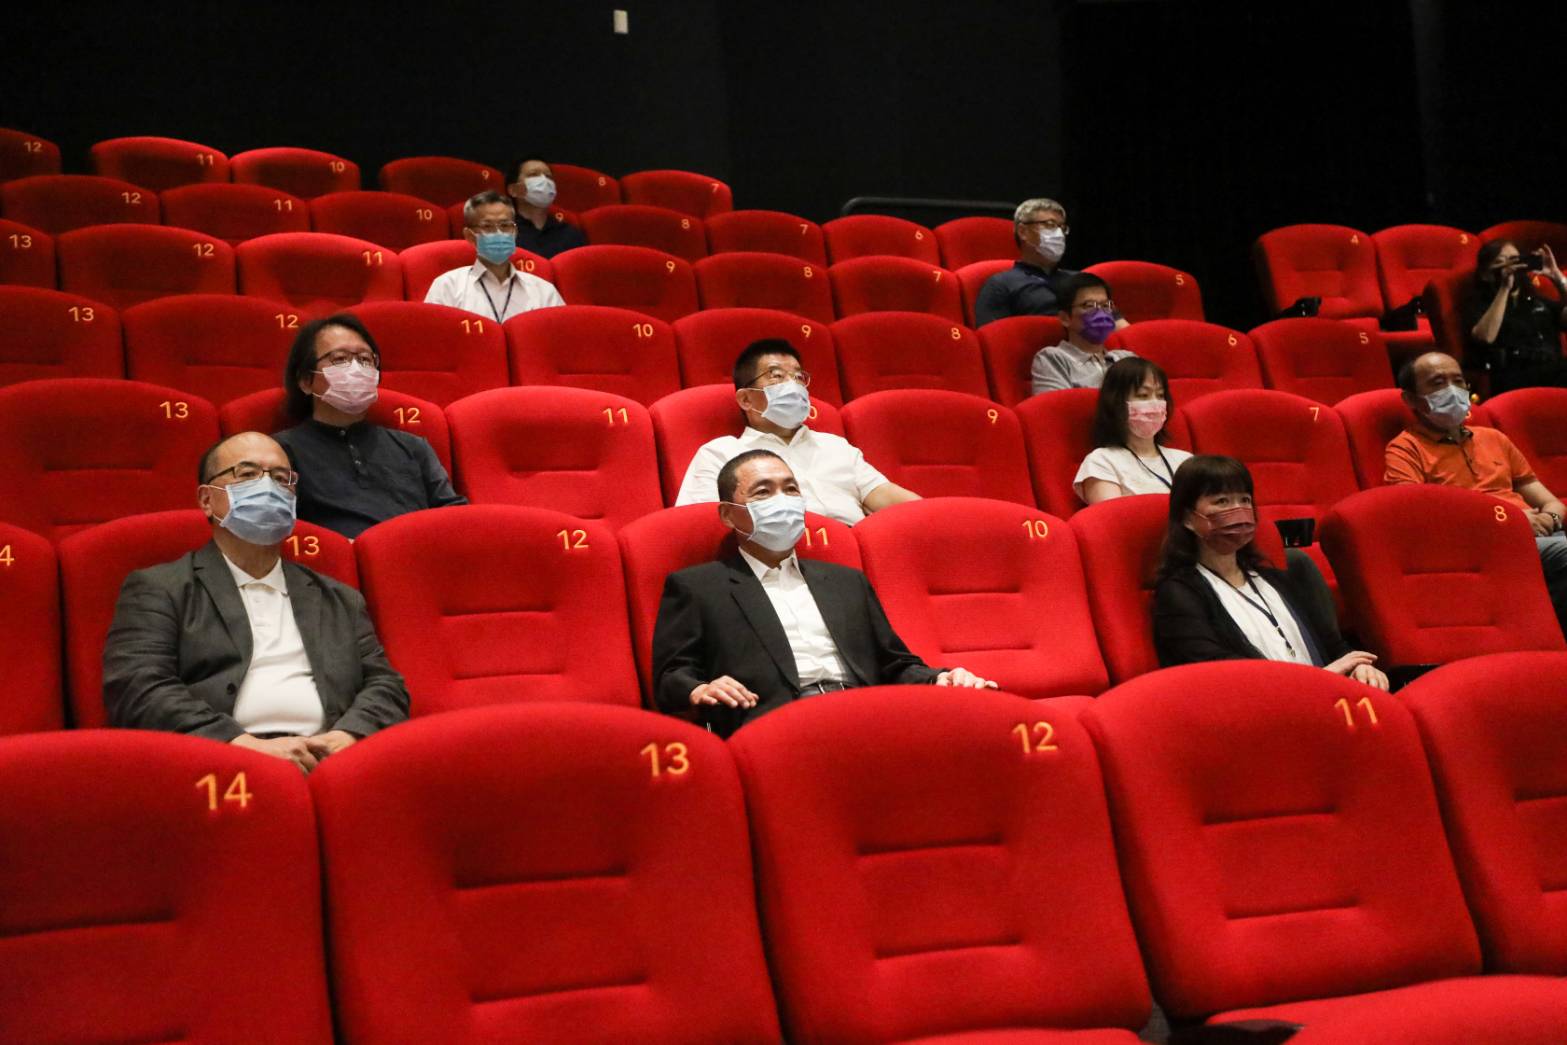 影廳包含200人大影廳、50人小影廳，分別採用Dolby Atmos 52聲道及42聲道設備，皆為國內同級影廳最高規格，同時還可以播放數位修復後的台灣電影。